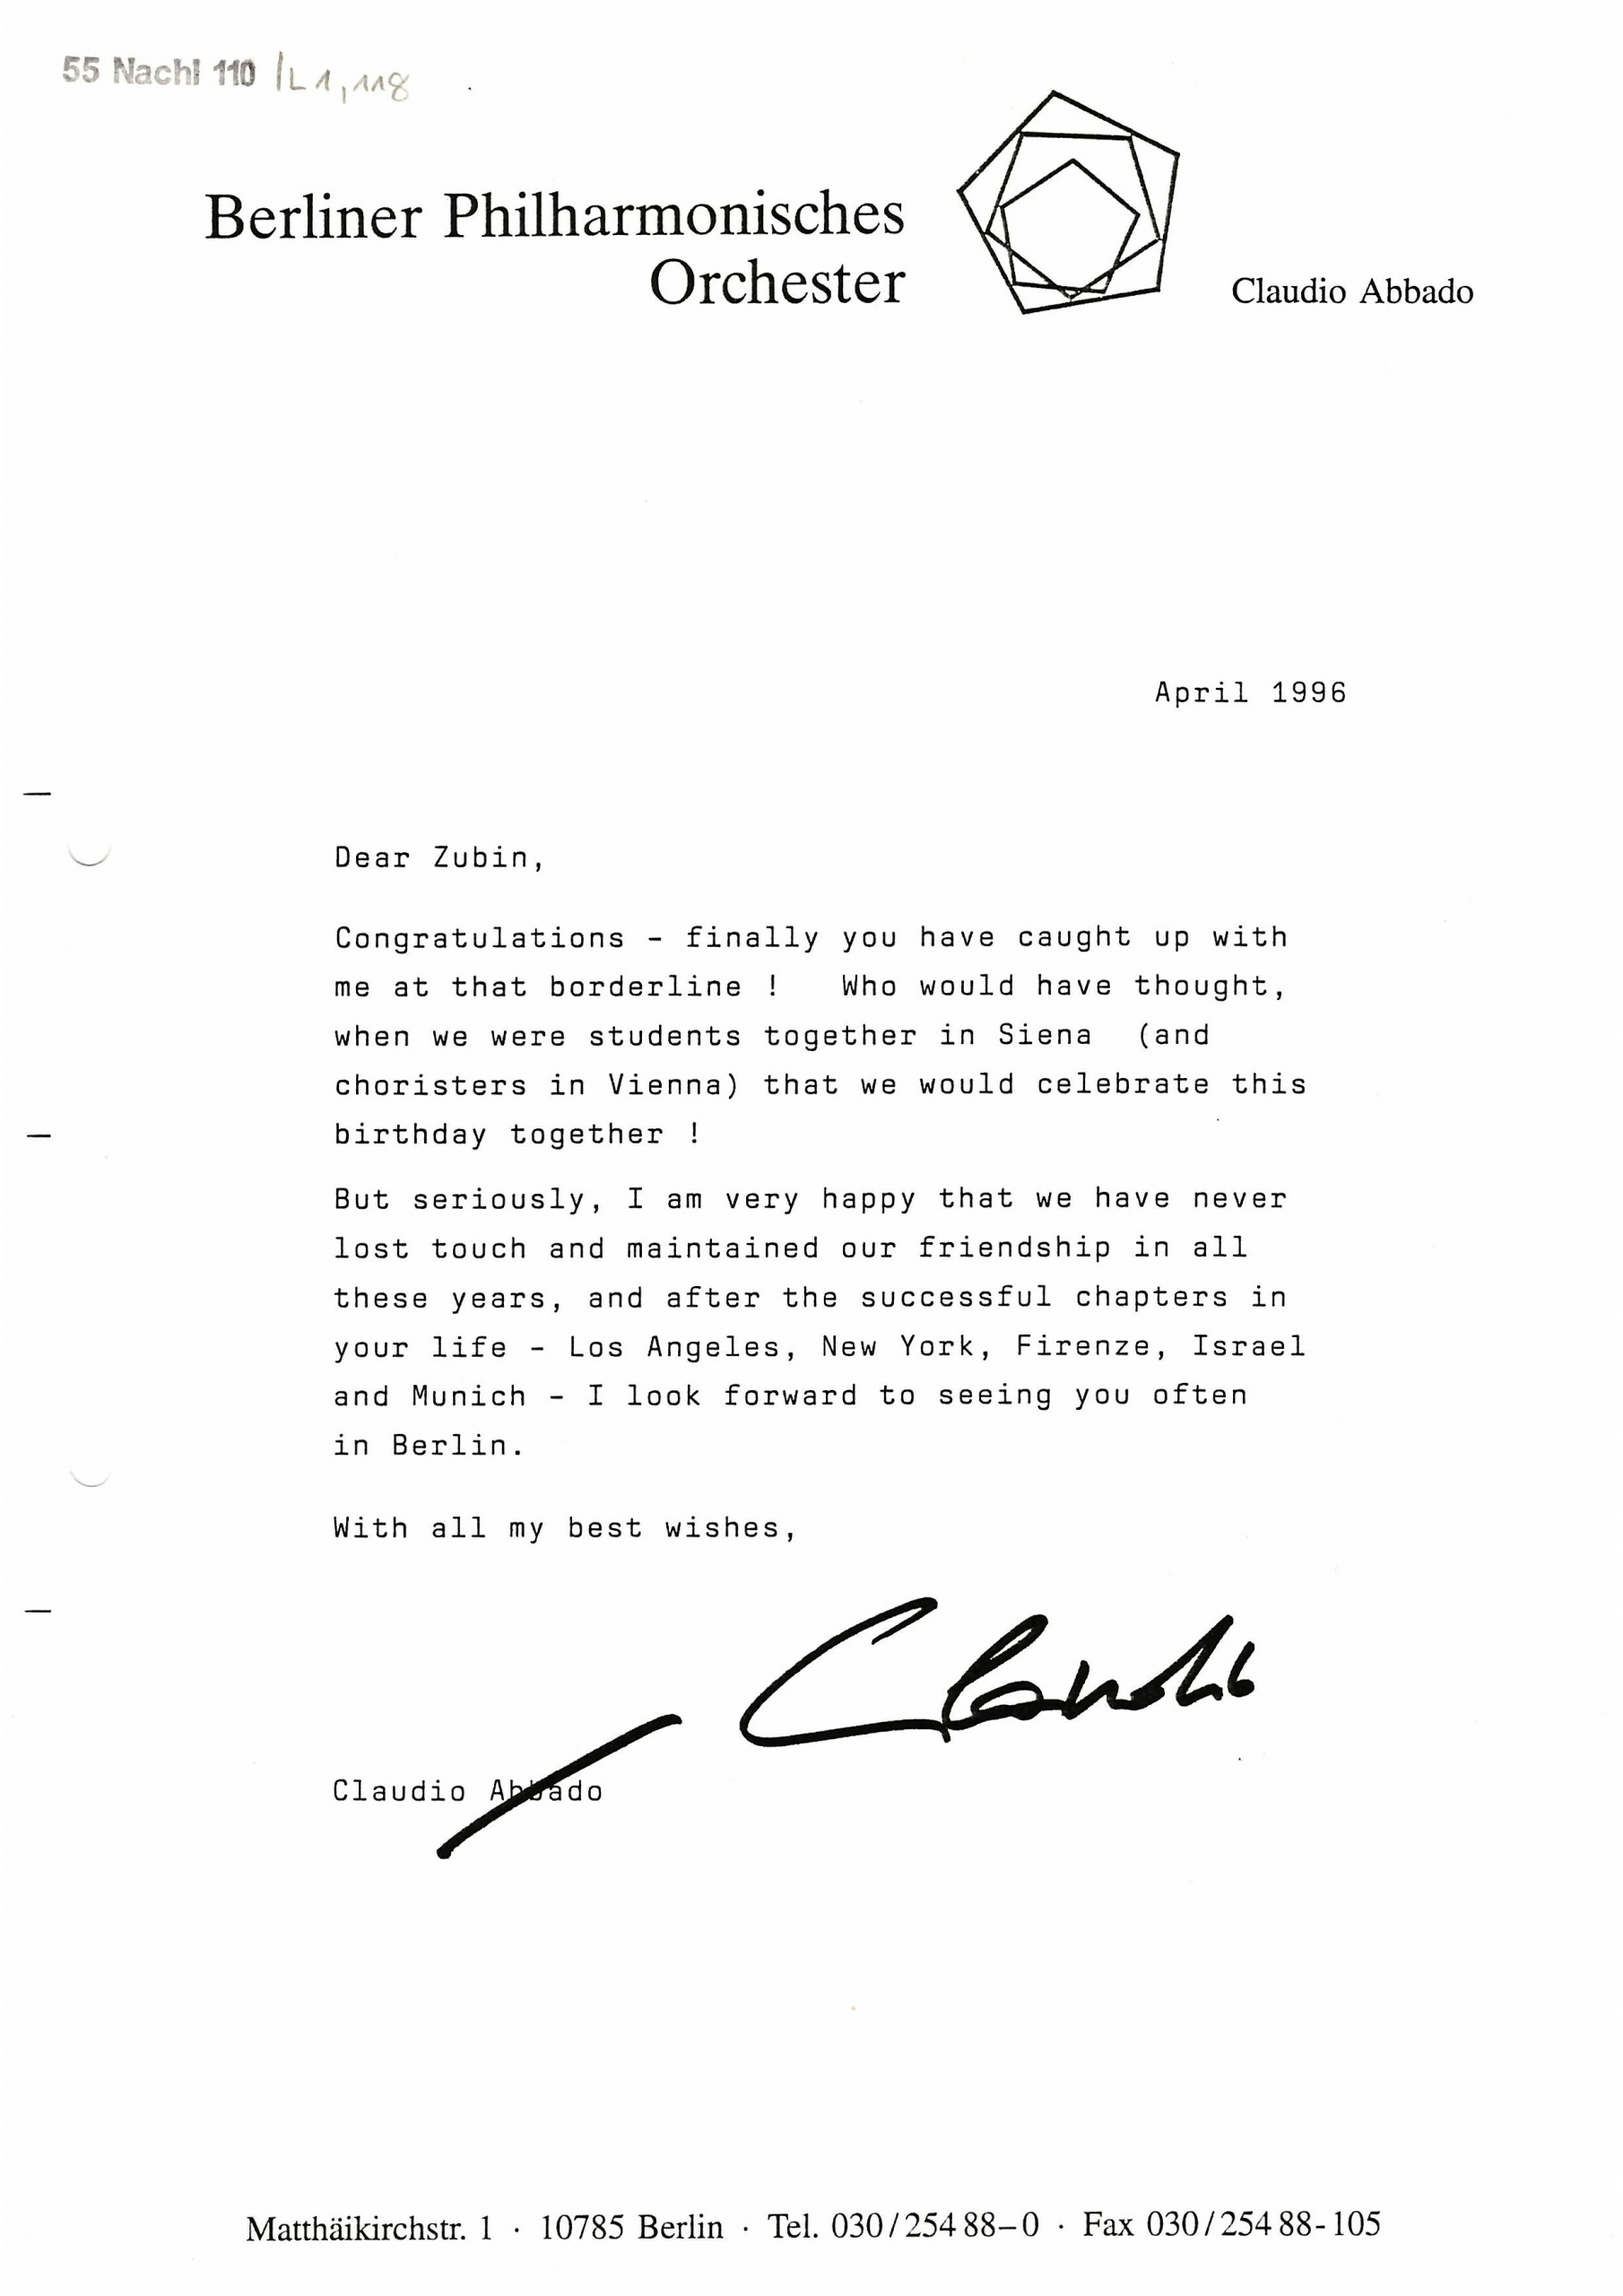 Brief von Claudio Abbado an Zubin Mehta zu dessen 60. Geburtstag